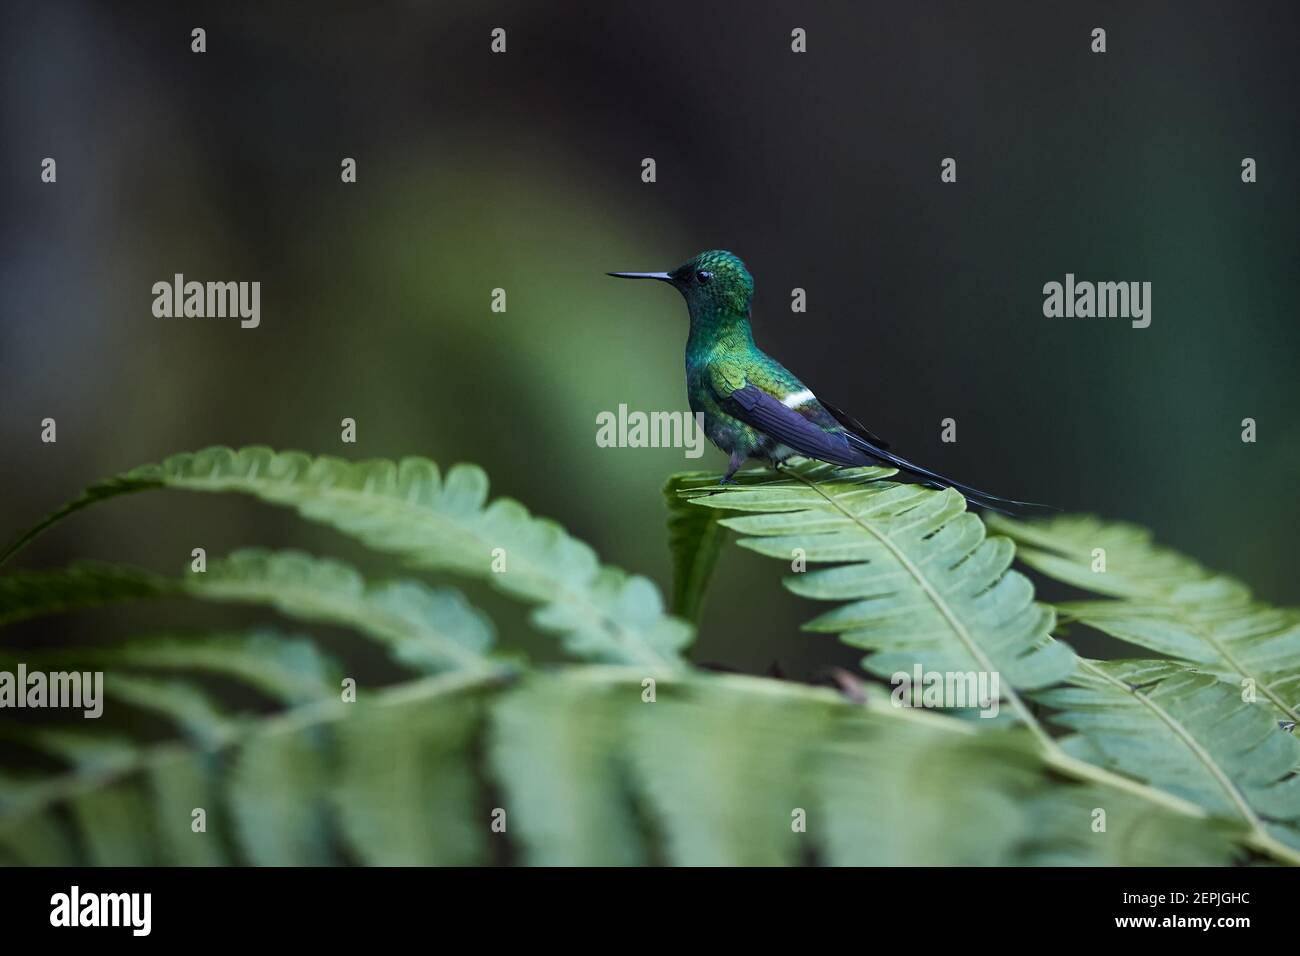 Kleiner Kolibri mit langem Schwanz, Discosura conversii, Grüner Thornschwanz, Männchen auf Brackenblatt. Regenwald, Costa Rica. Stockfoto